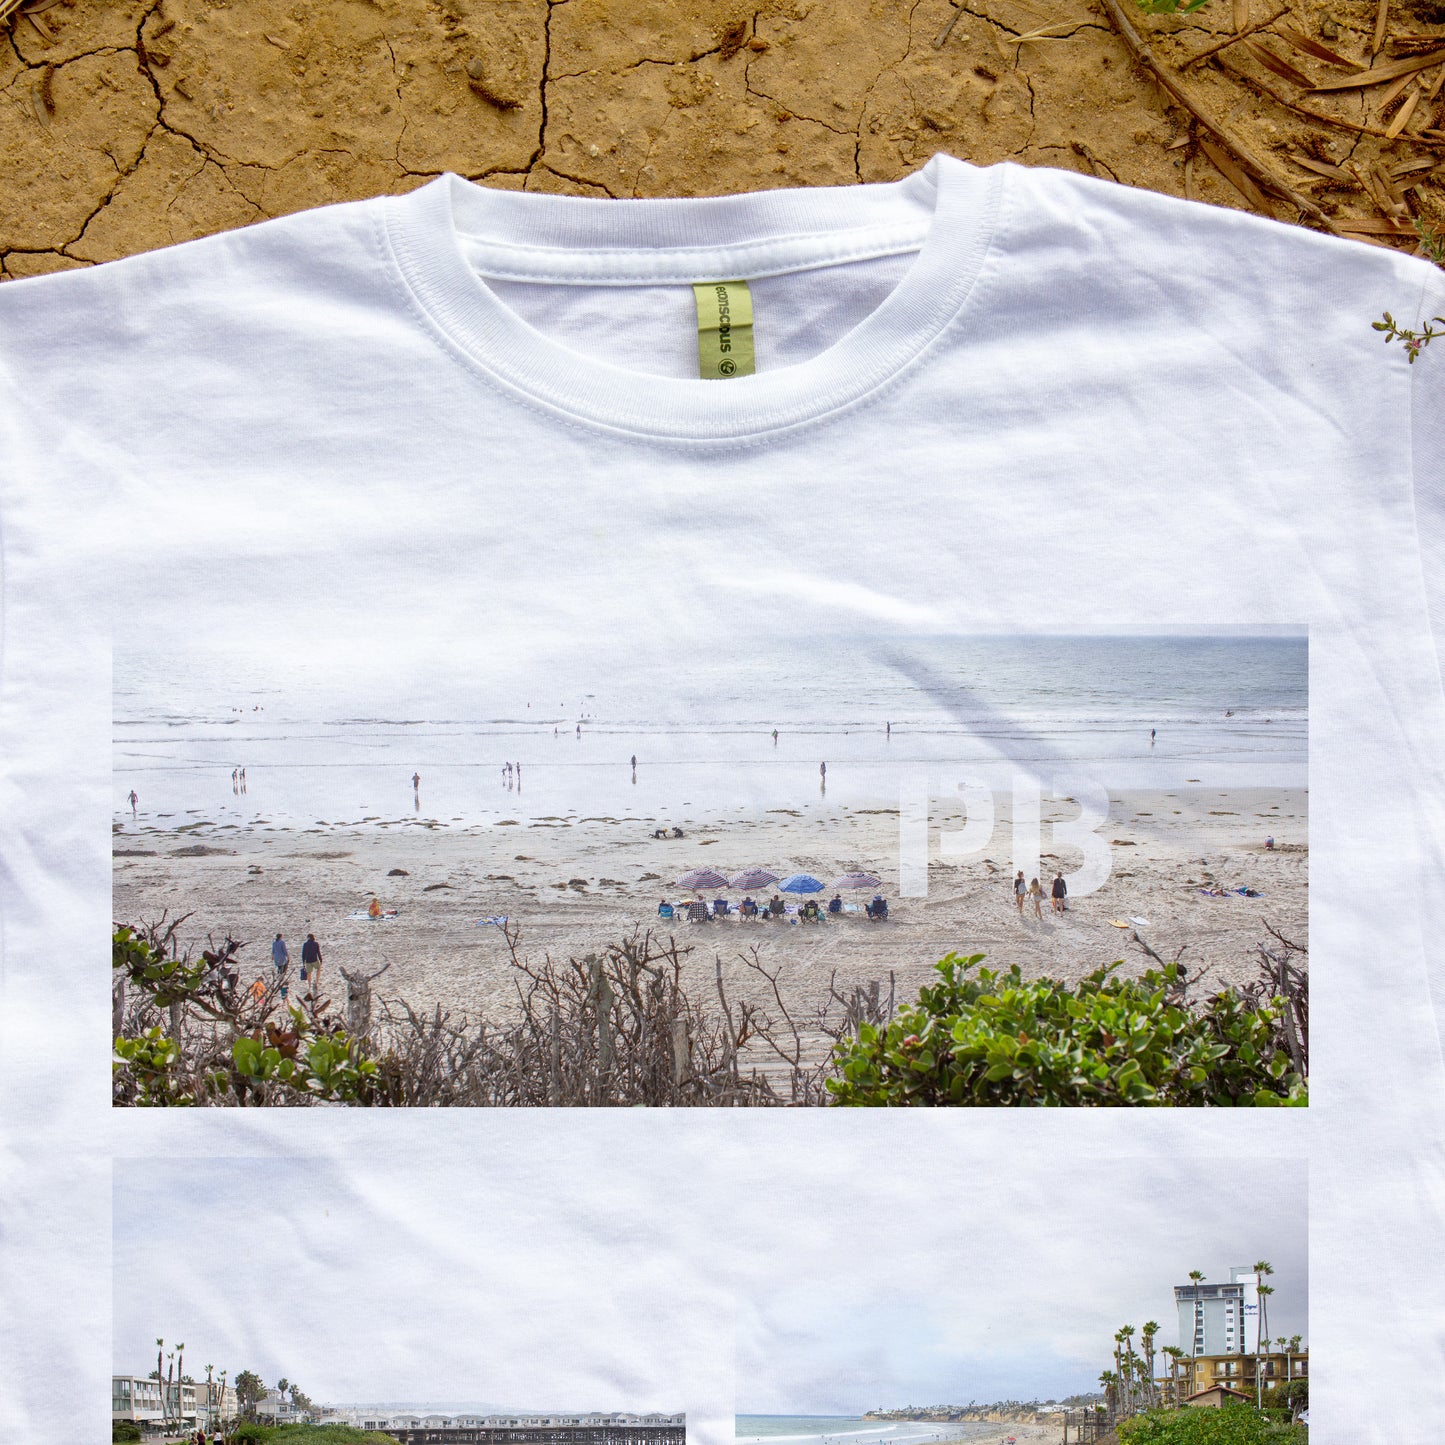 Le t-shirt bio Pacific Beach